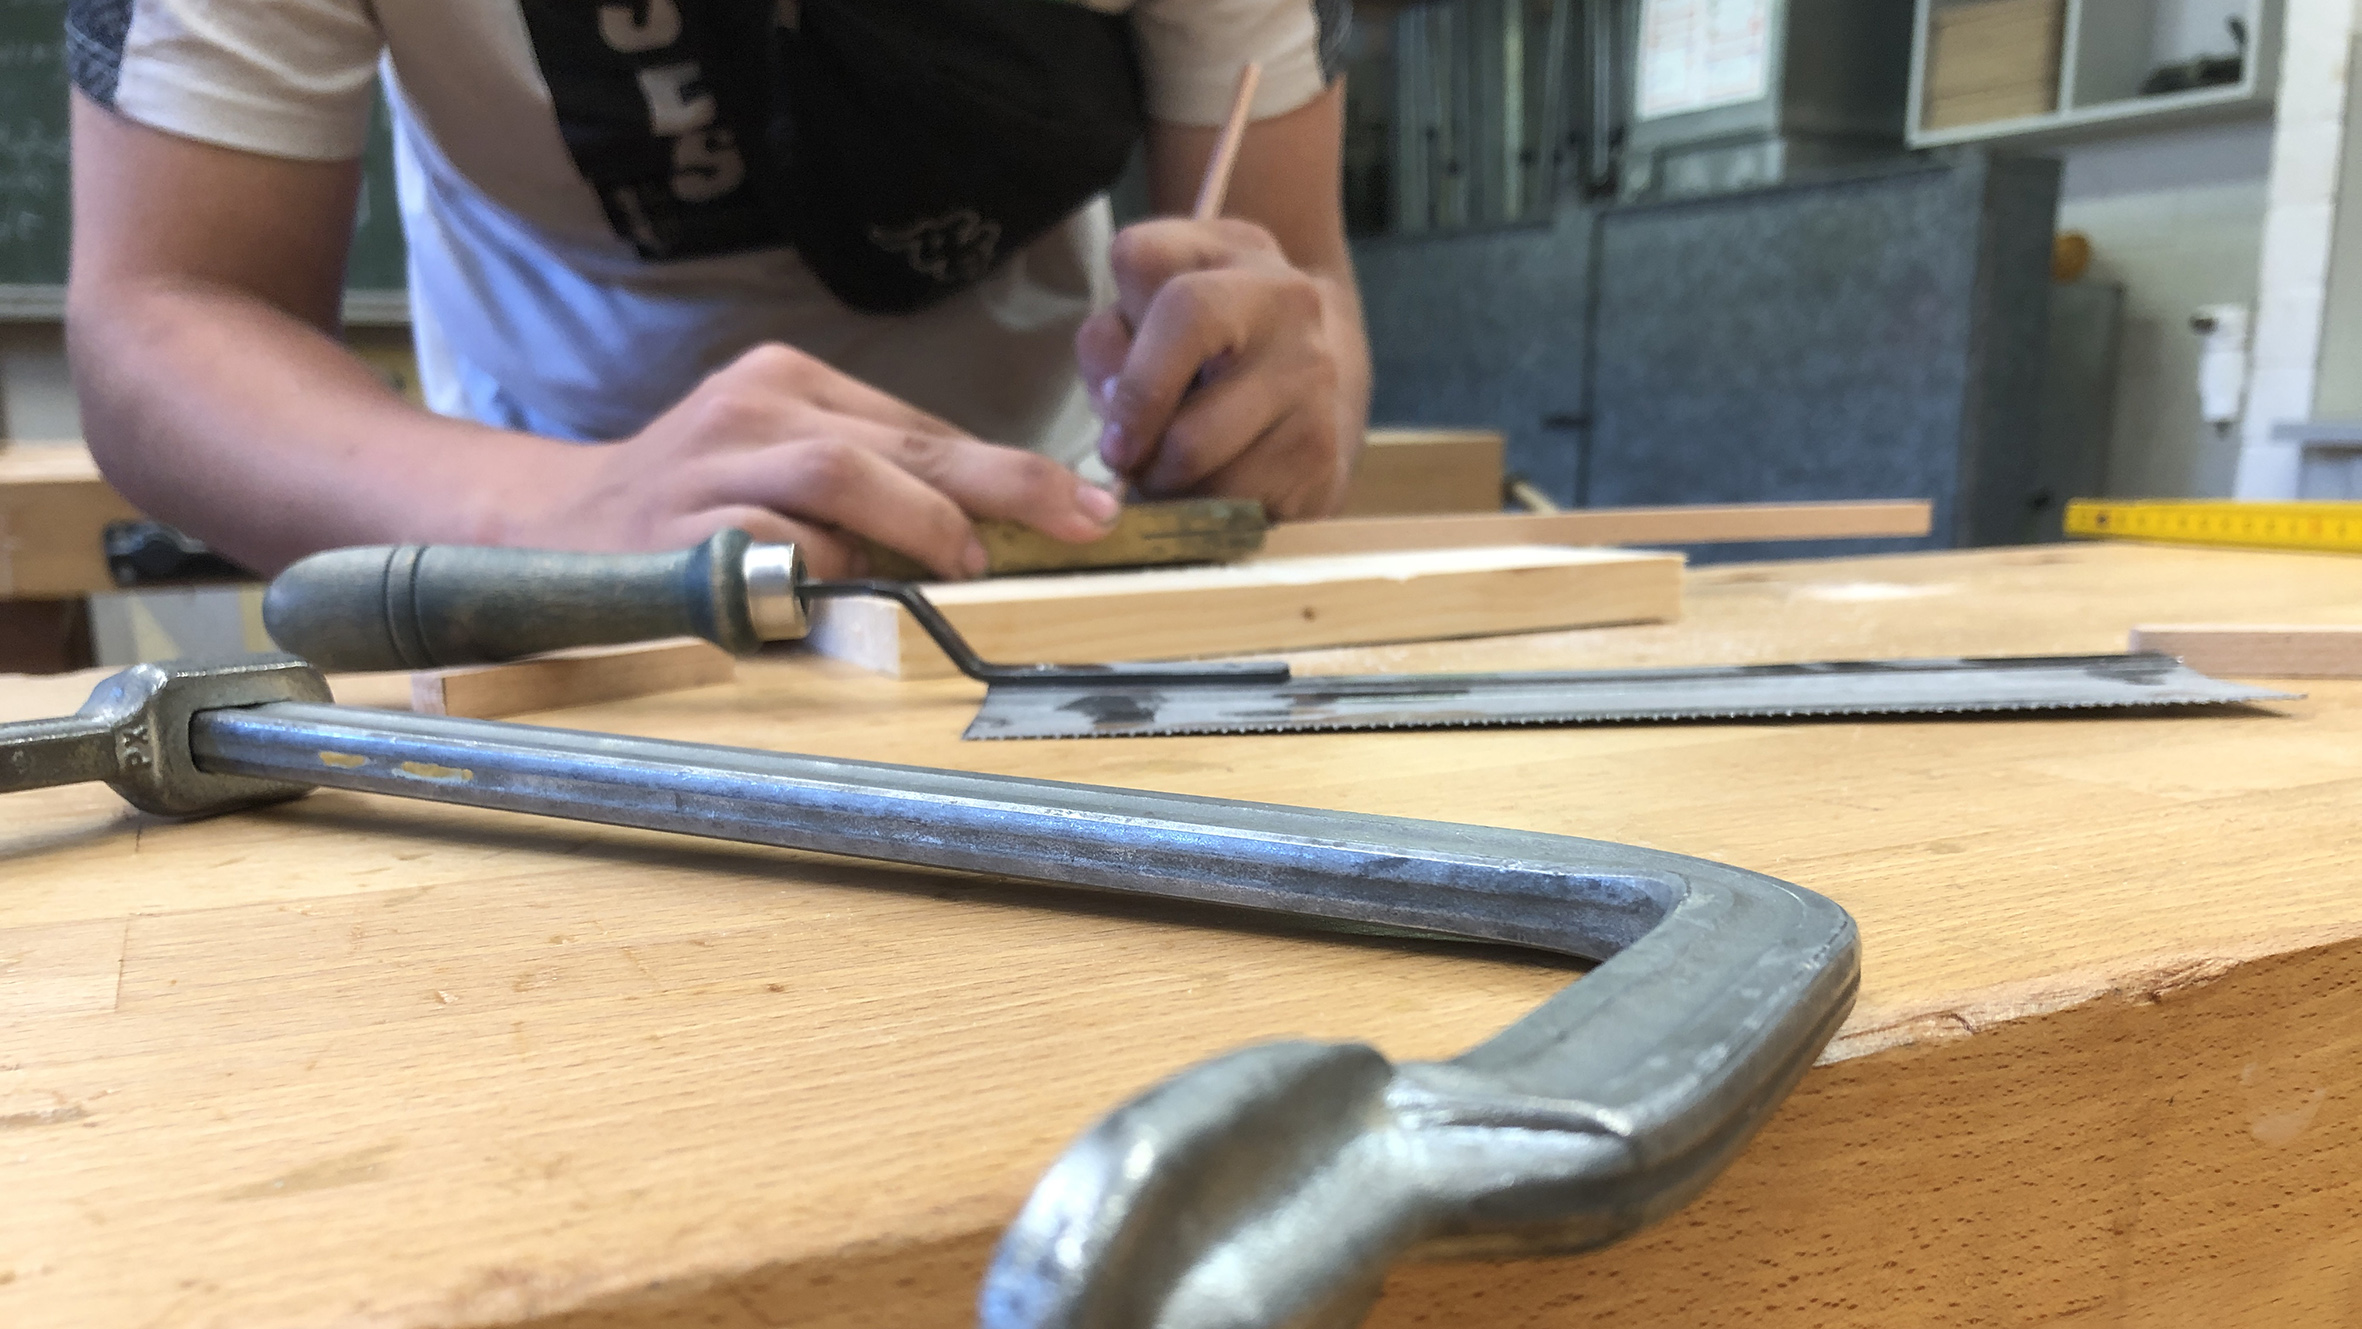 RWB Essen - #OPRA++ - Bilder aus dem Workshop "Holztechnik - Schlüsselanhänger aus Holz selbstgemacht"